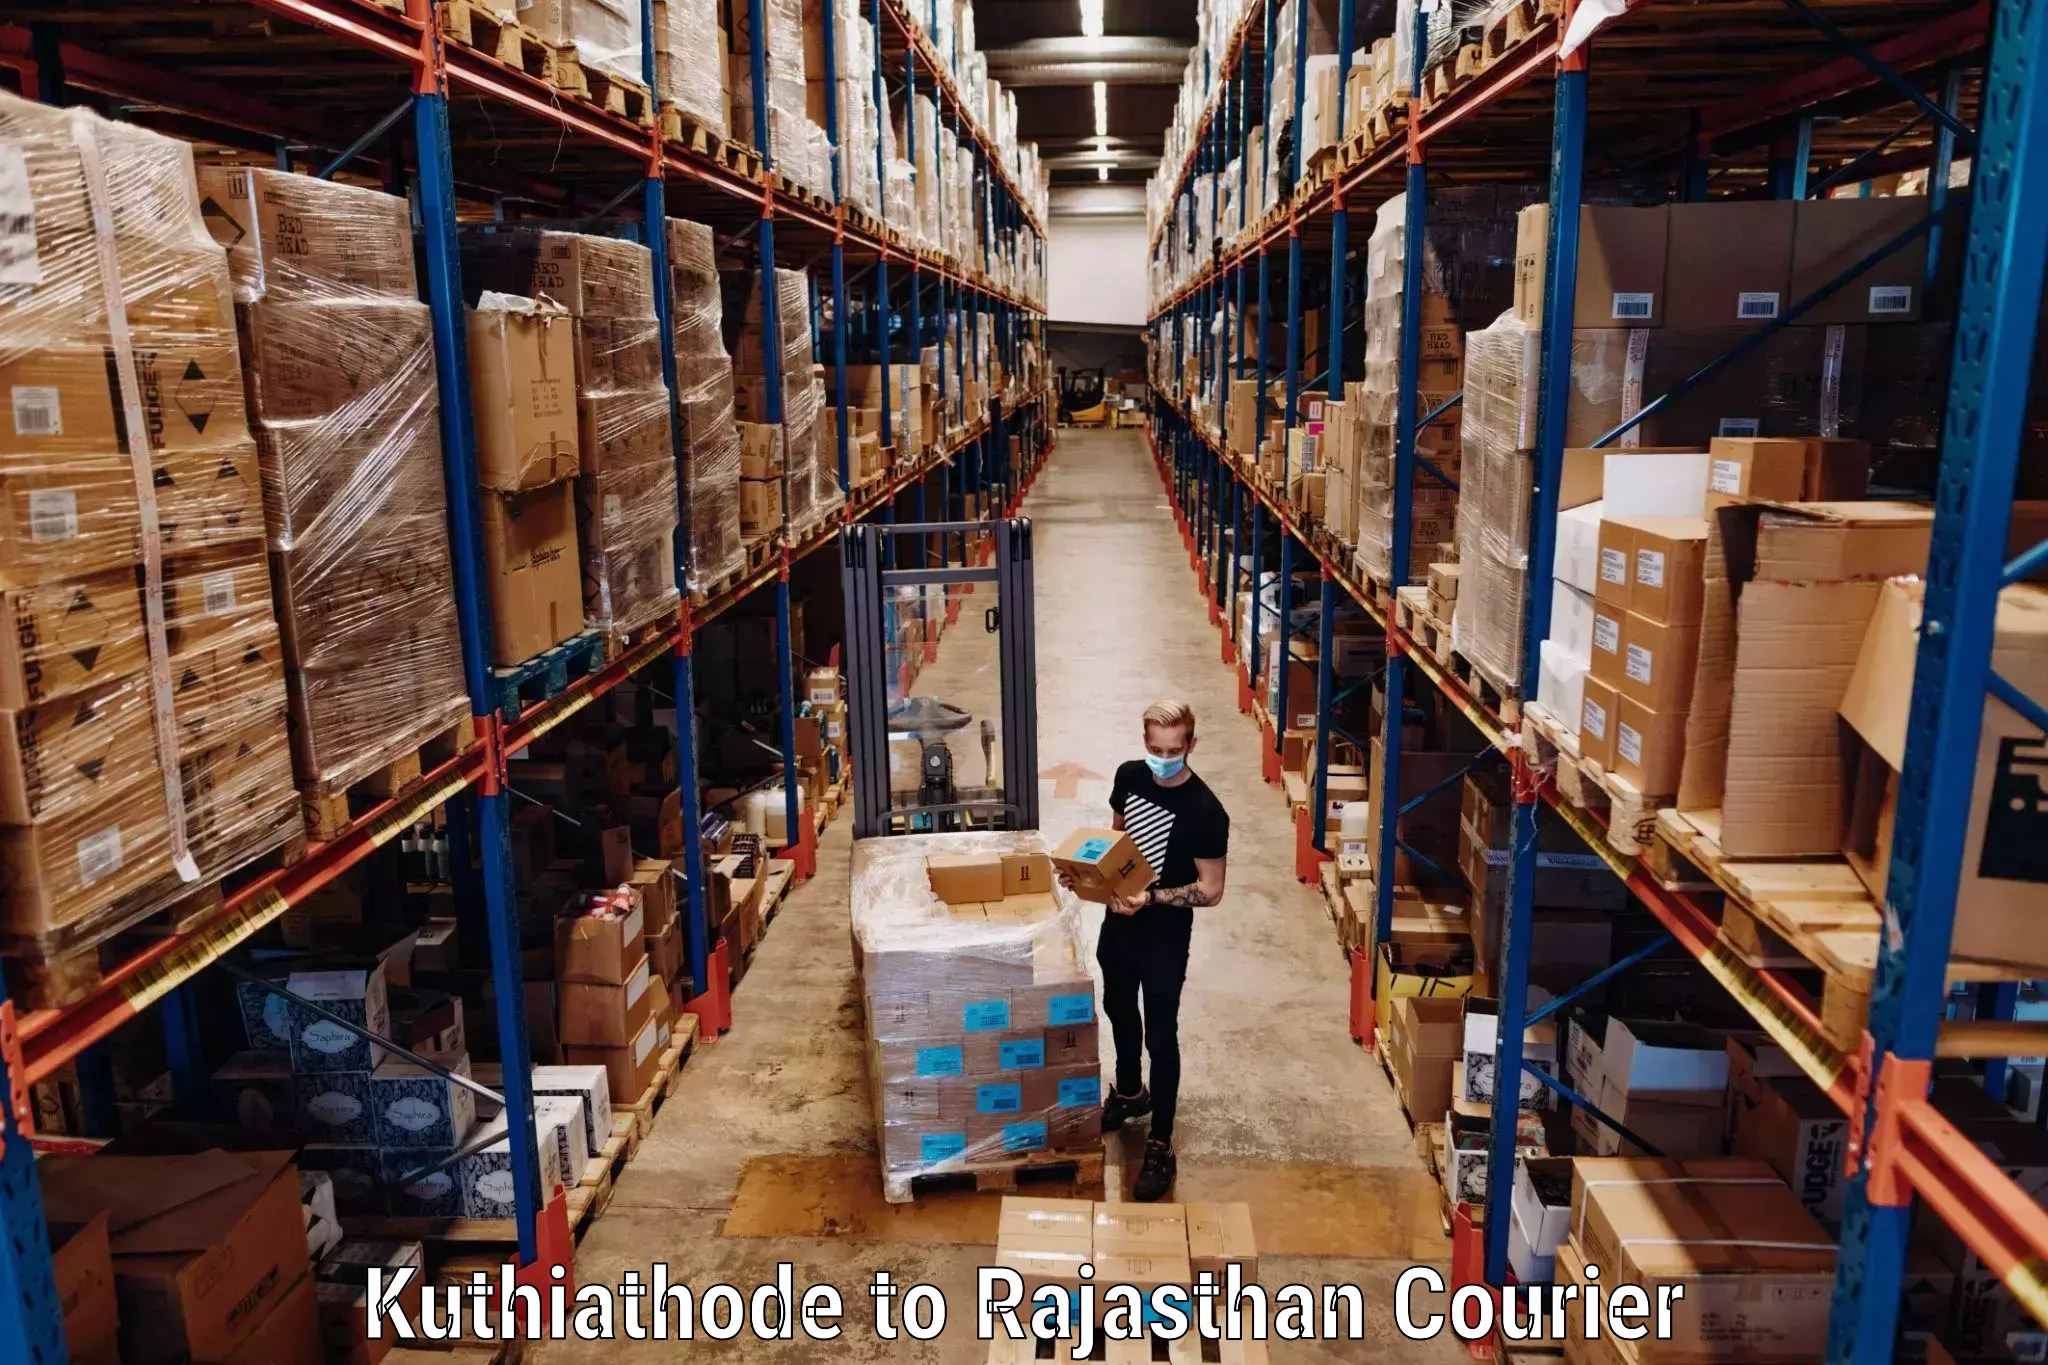 Baggage shipping experts Kuthiathode to Pindwara